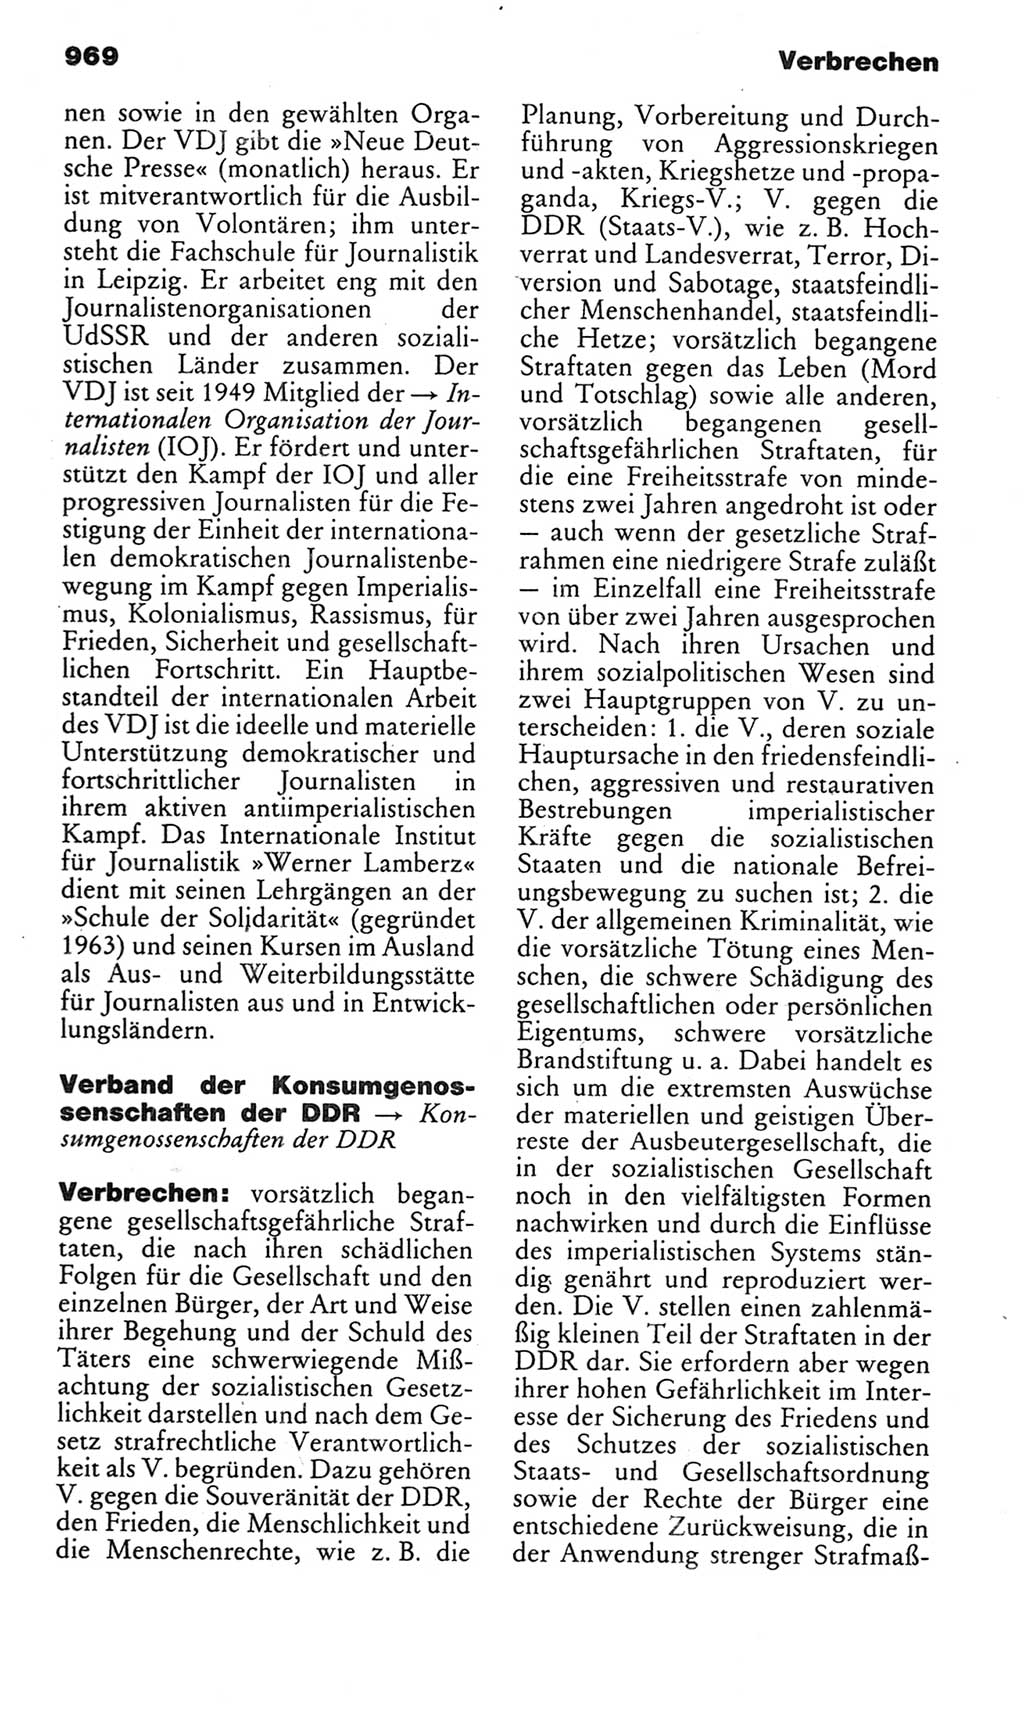 Kleines politisches Wörterbuch [Deutsche Demokratische Republik (DDR)] 1983, Seite 969 (Kl. pol. Wb. DDR 1983, S. 969)